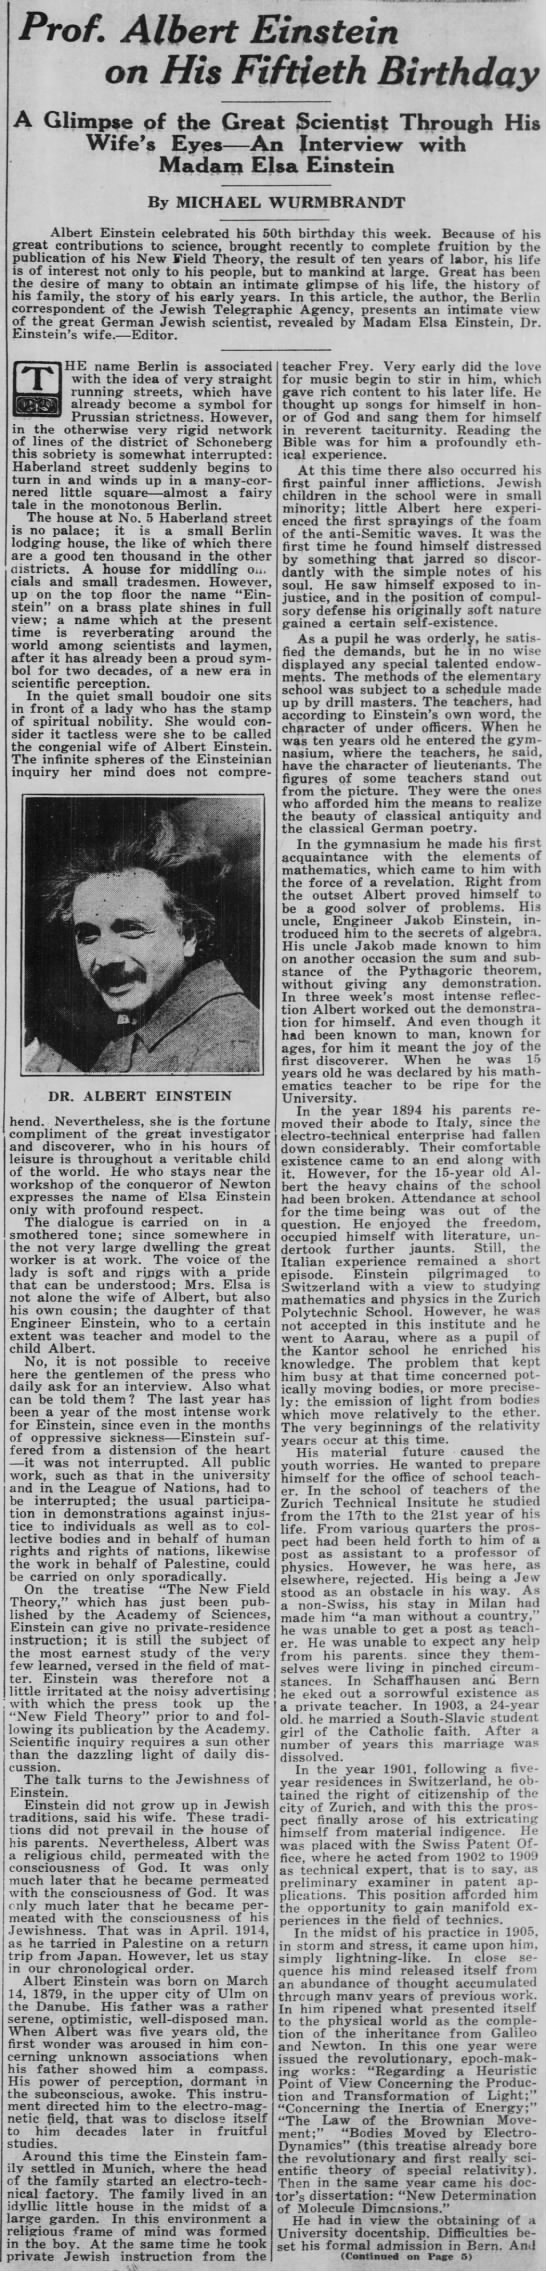 Excerpt of Madam Elsa Einstein’s interview on her husband, Albert Einstein, for his 50th birthday - 